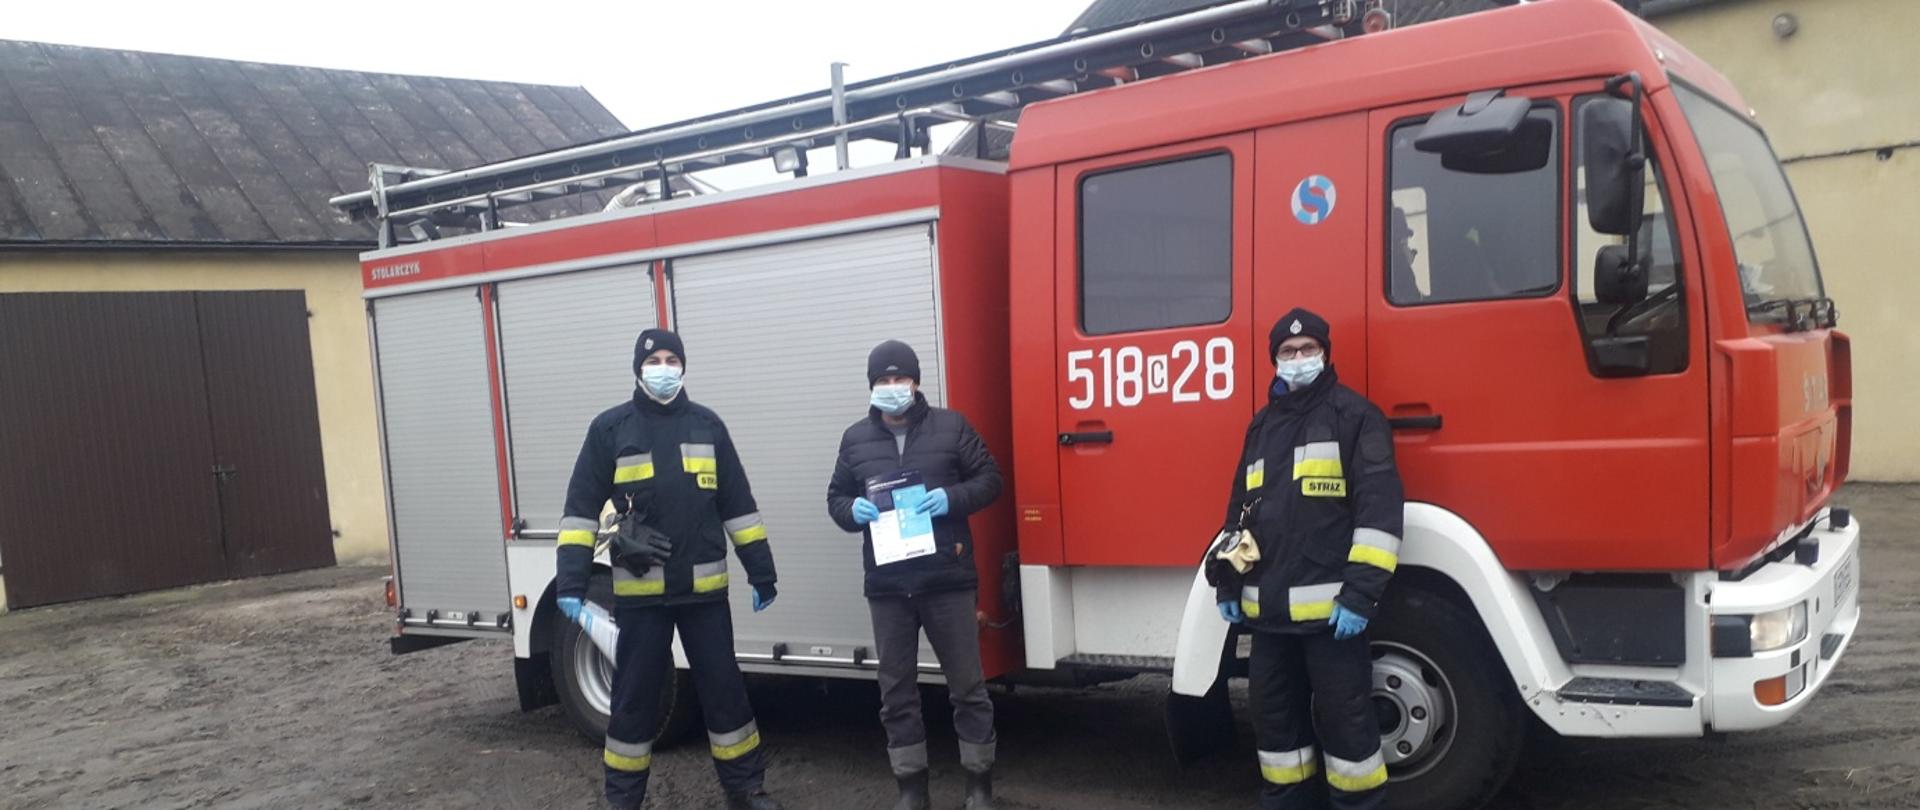 Zdjęcie przedstawia dwóch strażaków OSP, którzy wręczyli mężczyźnie ulotkę dotyczącą szczepień przeciwko COVID-19. Zdjęcie wykonane jest na tle samochodu strażackiego. Na kabinie pojazdu widać numery operacyjne 518c28. Po lewej stronie zdjęcia oraz za samochodem widać budynki gospodarcze. 